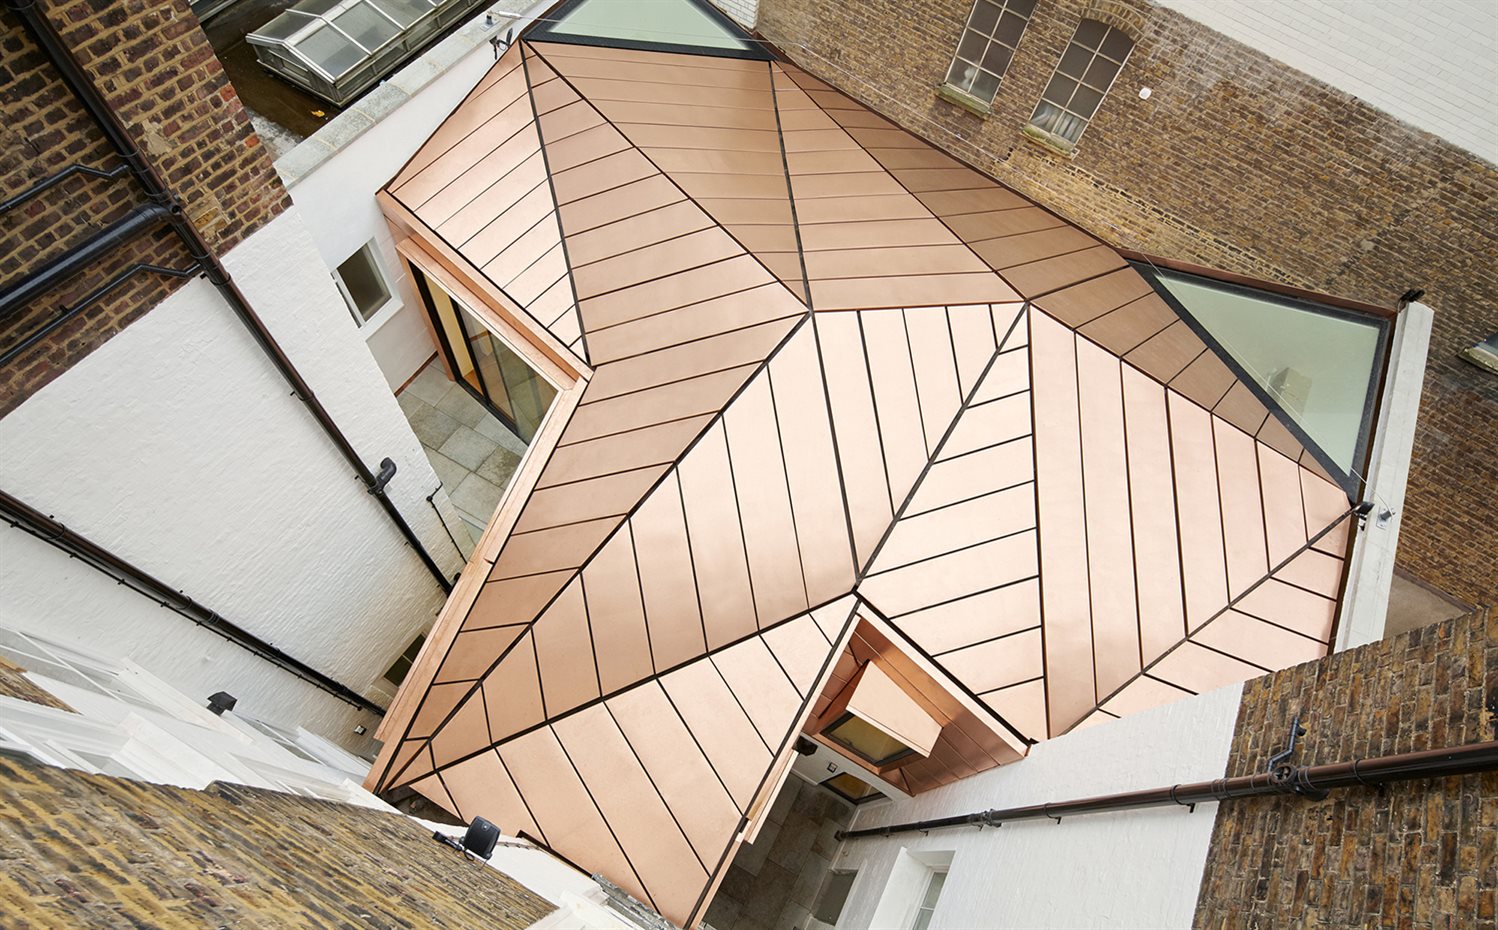 Casa en Great James Street, Londres, de Emrys Architects. Premios Europeos del Cobre en la Arquitectura